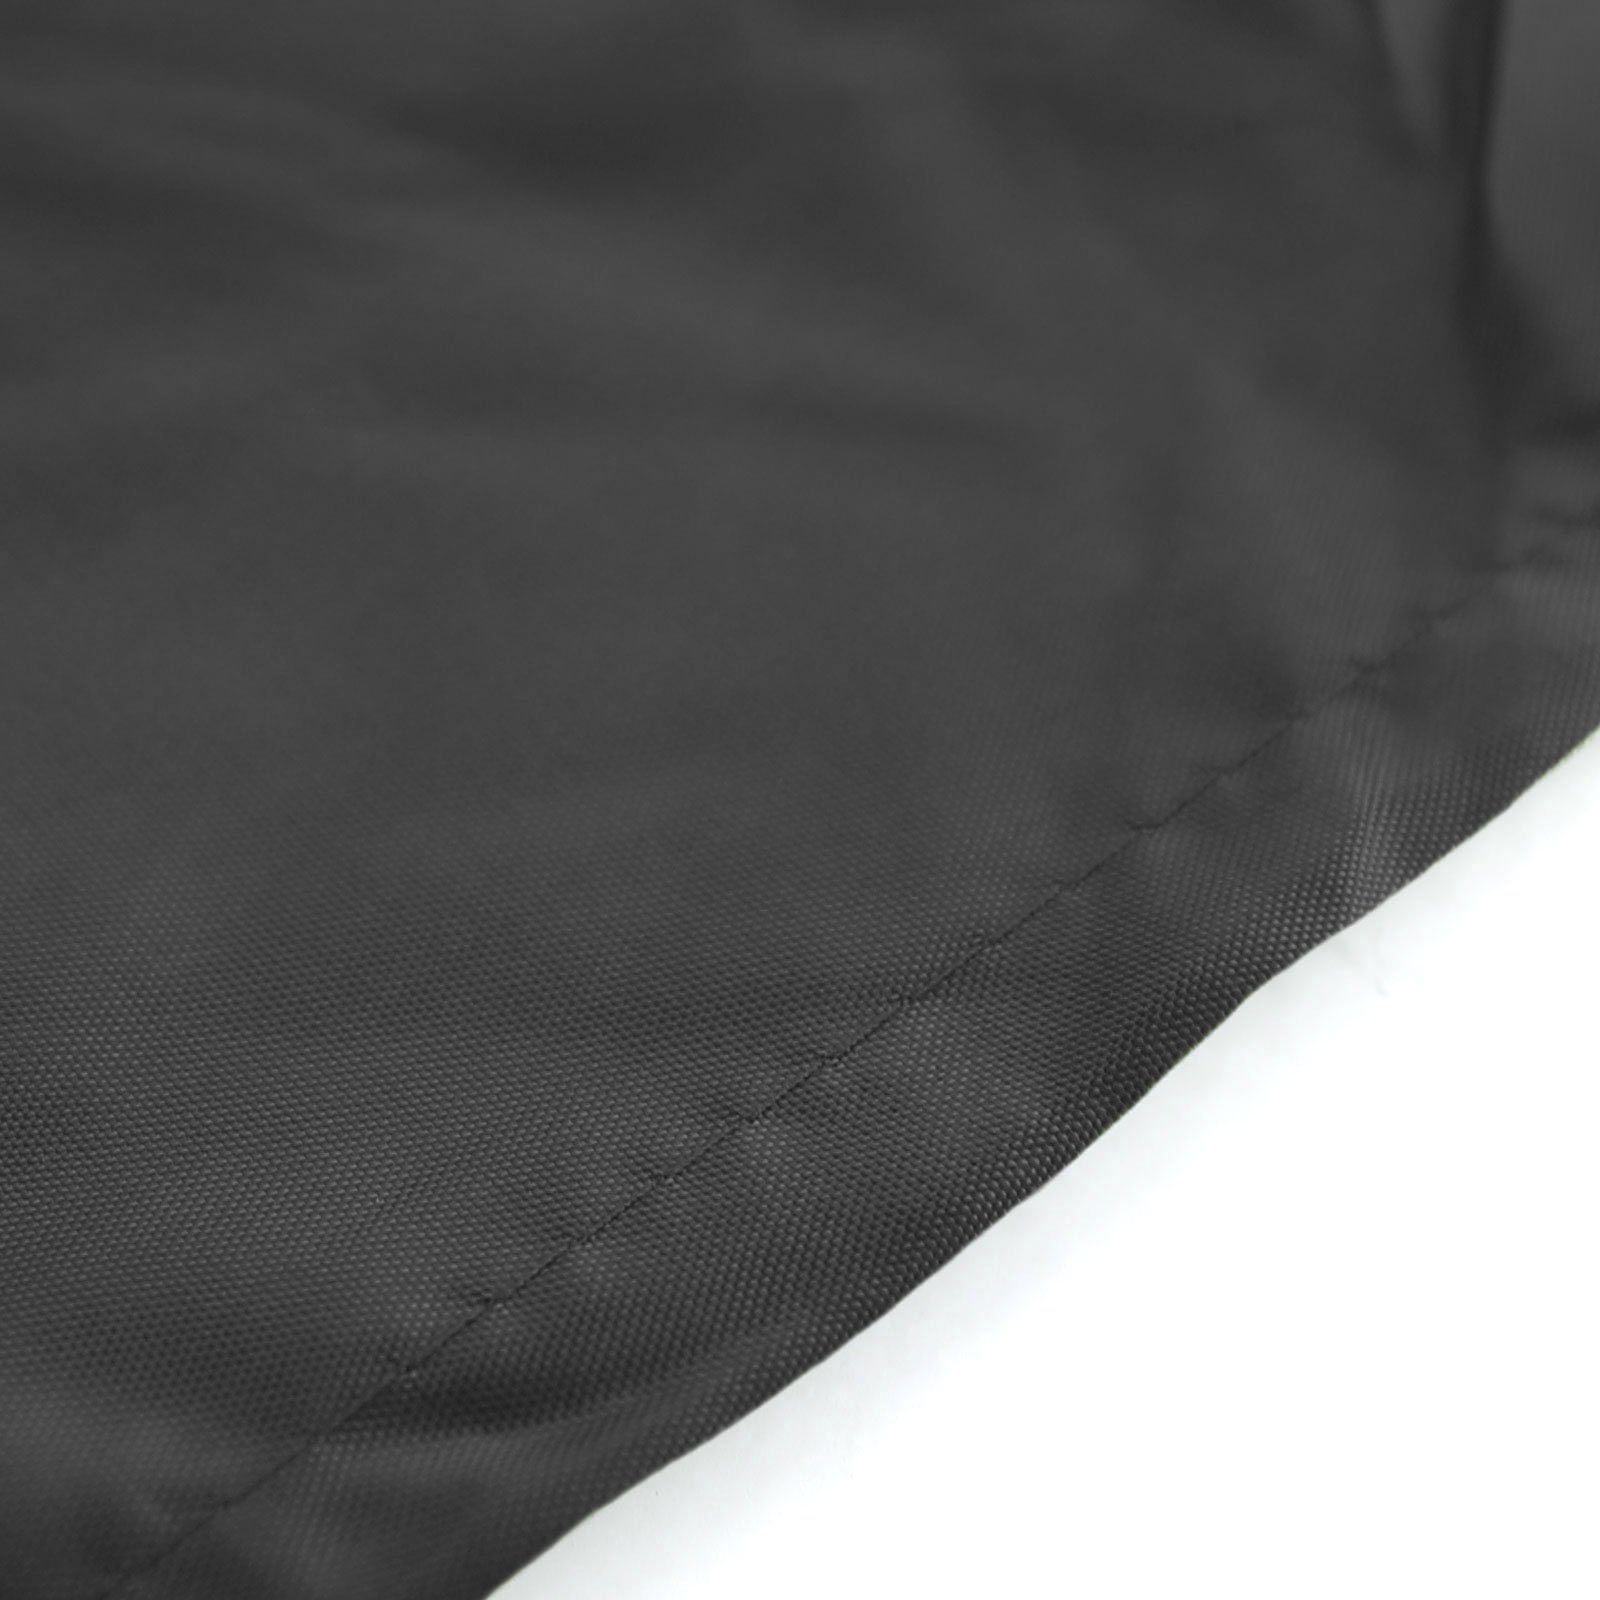 Hängesessel Schutzabdeckung Schwarz für RAMROXX Premium Cover Hängesessel 190x100cm Schutzhülle